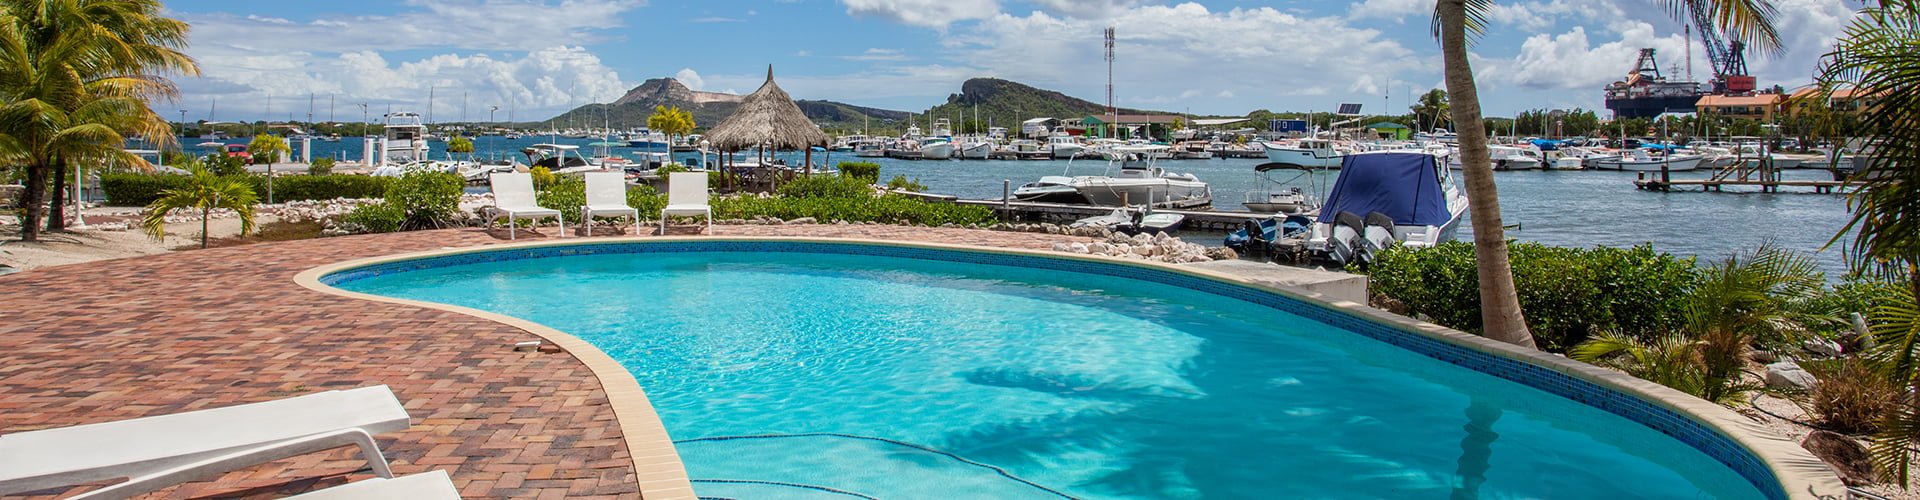 Zwembad resort masbango